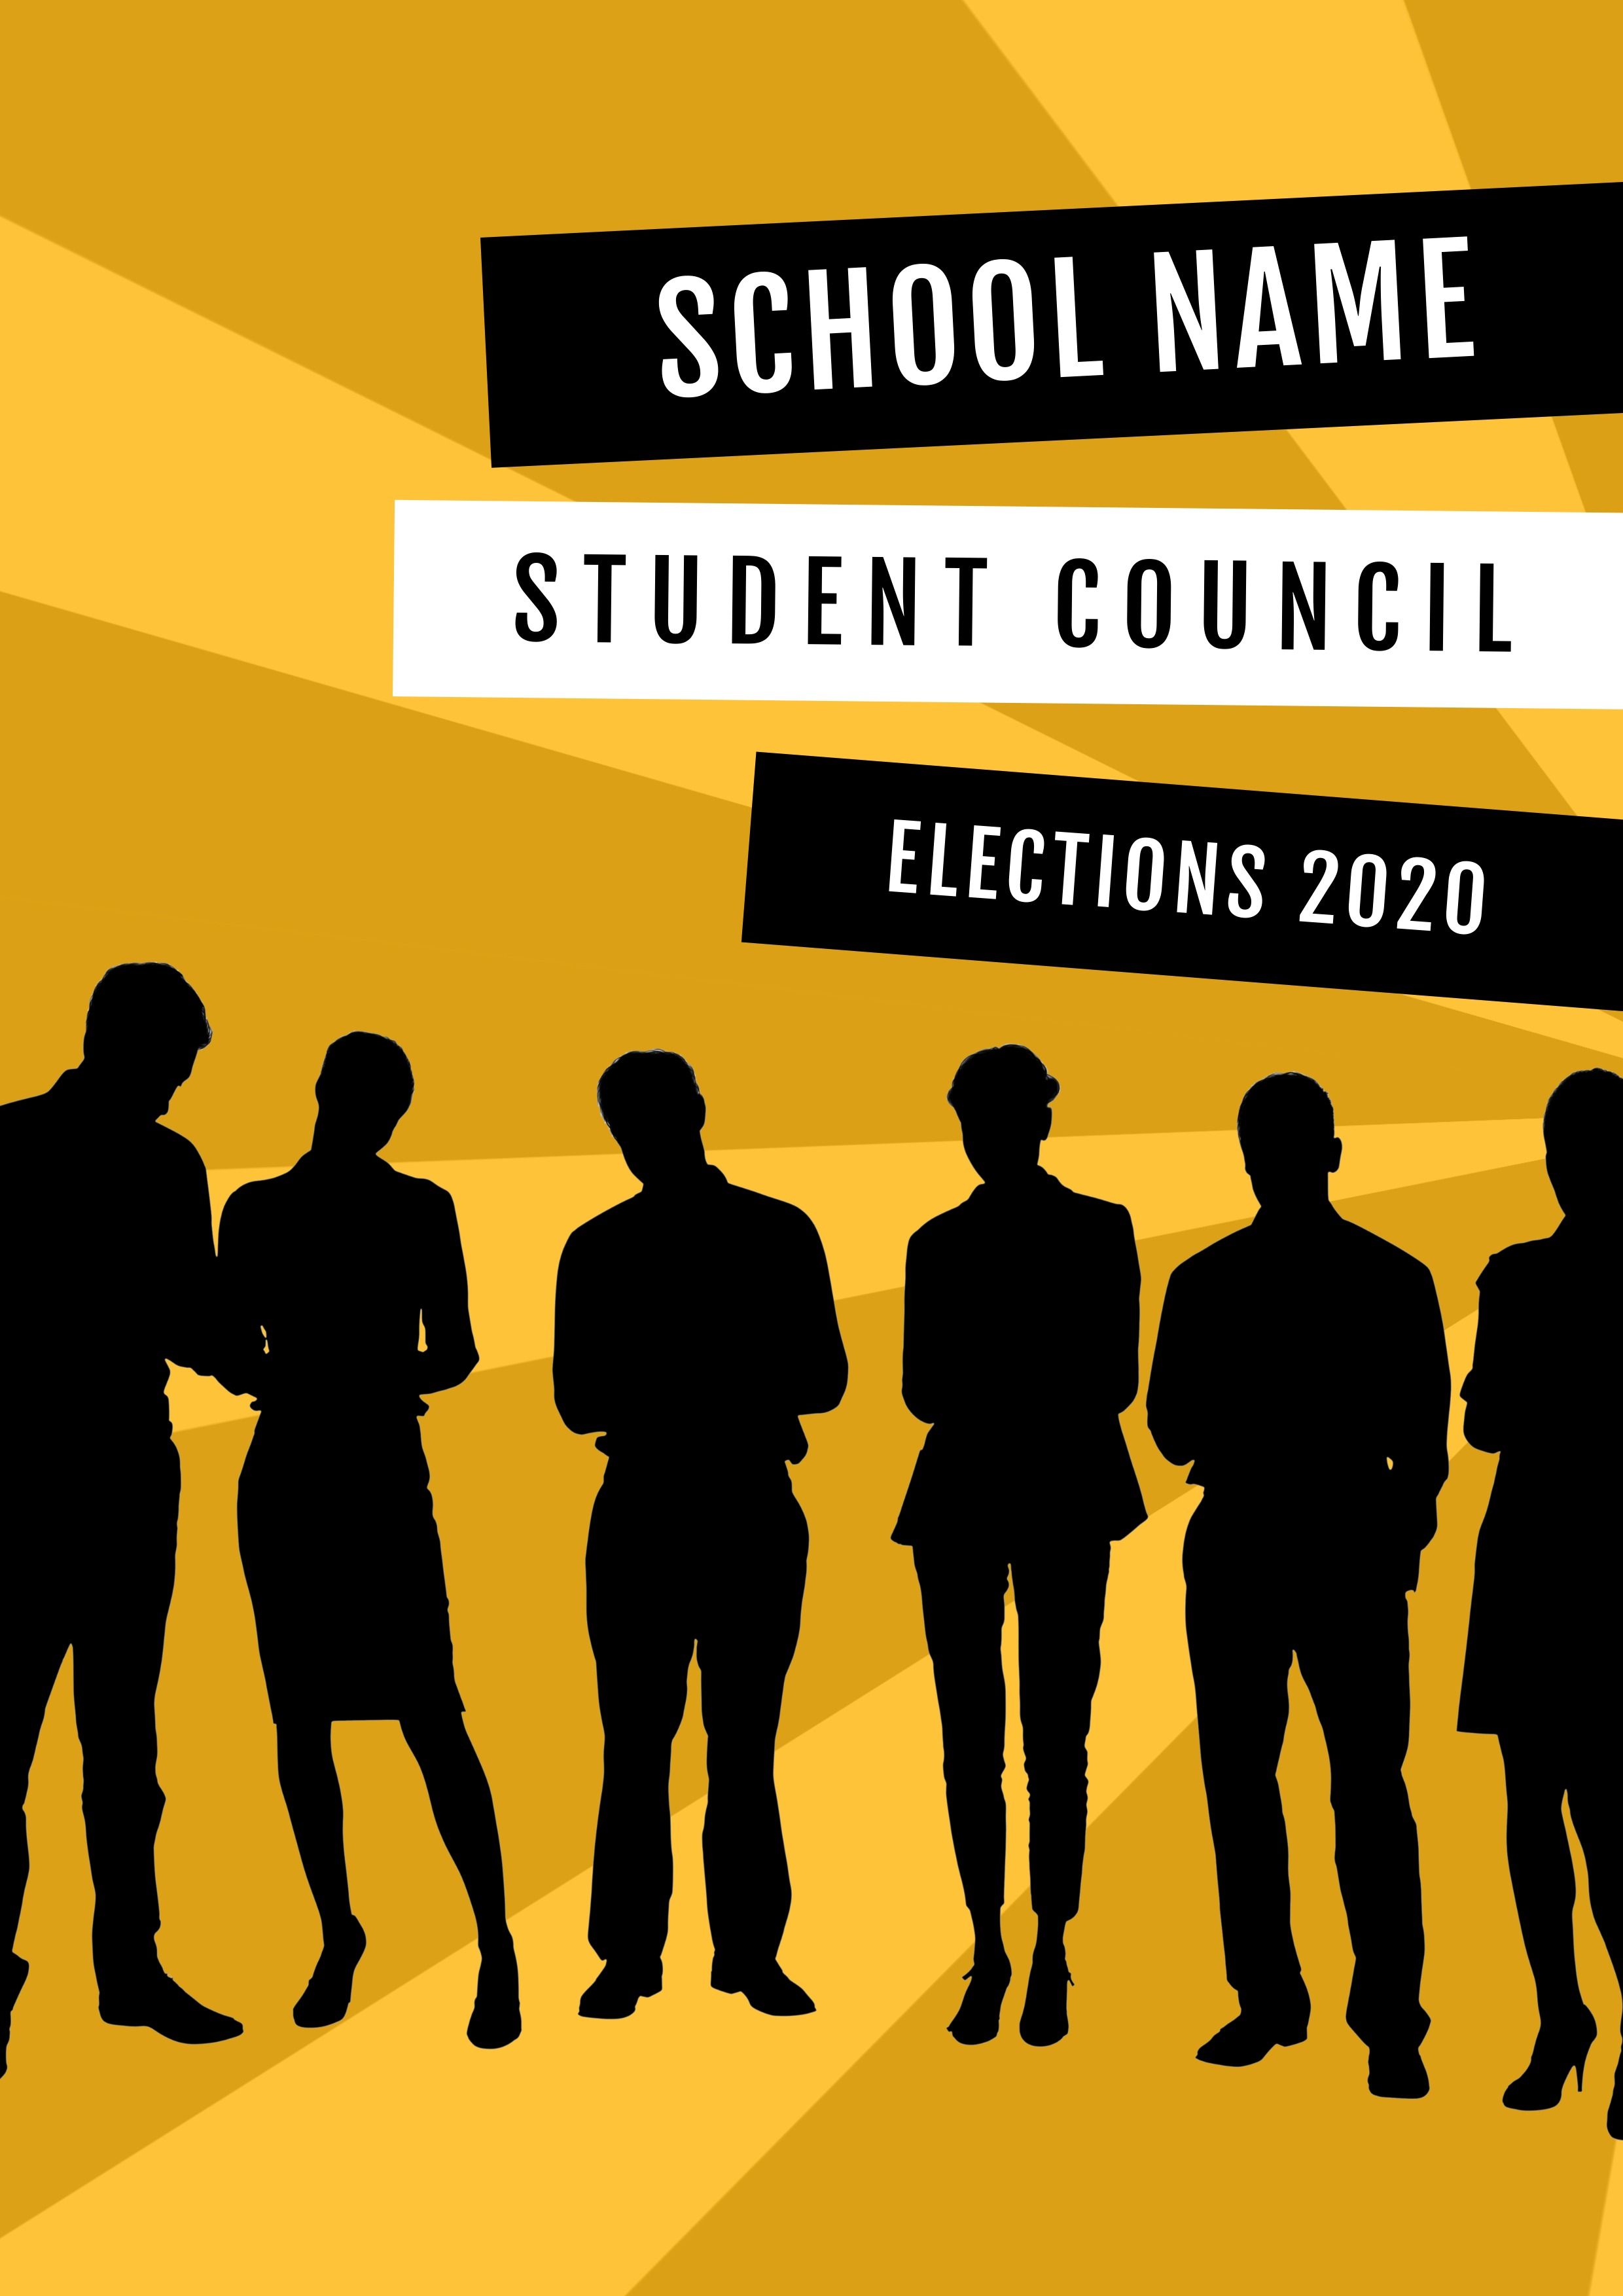 Affiche d'élection du conseil étudiant noir et jaune - Image